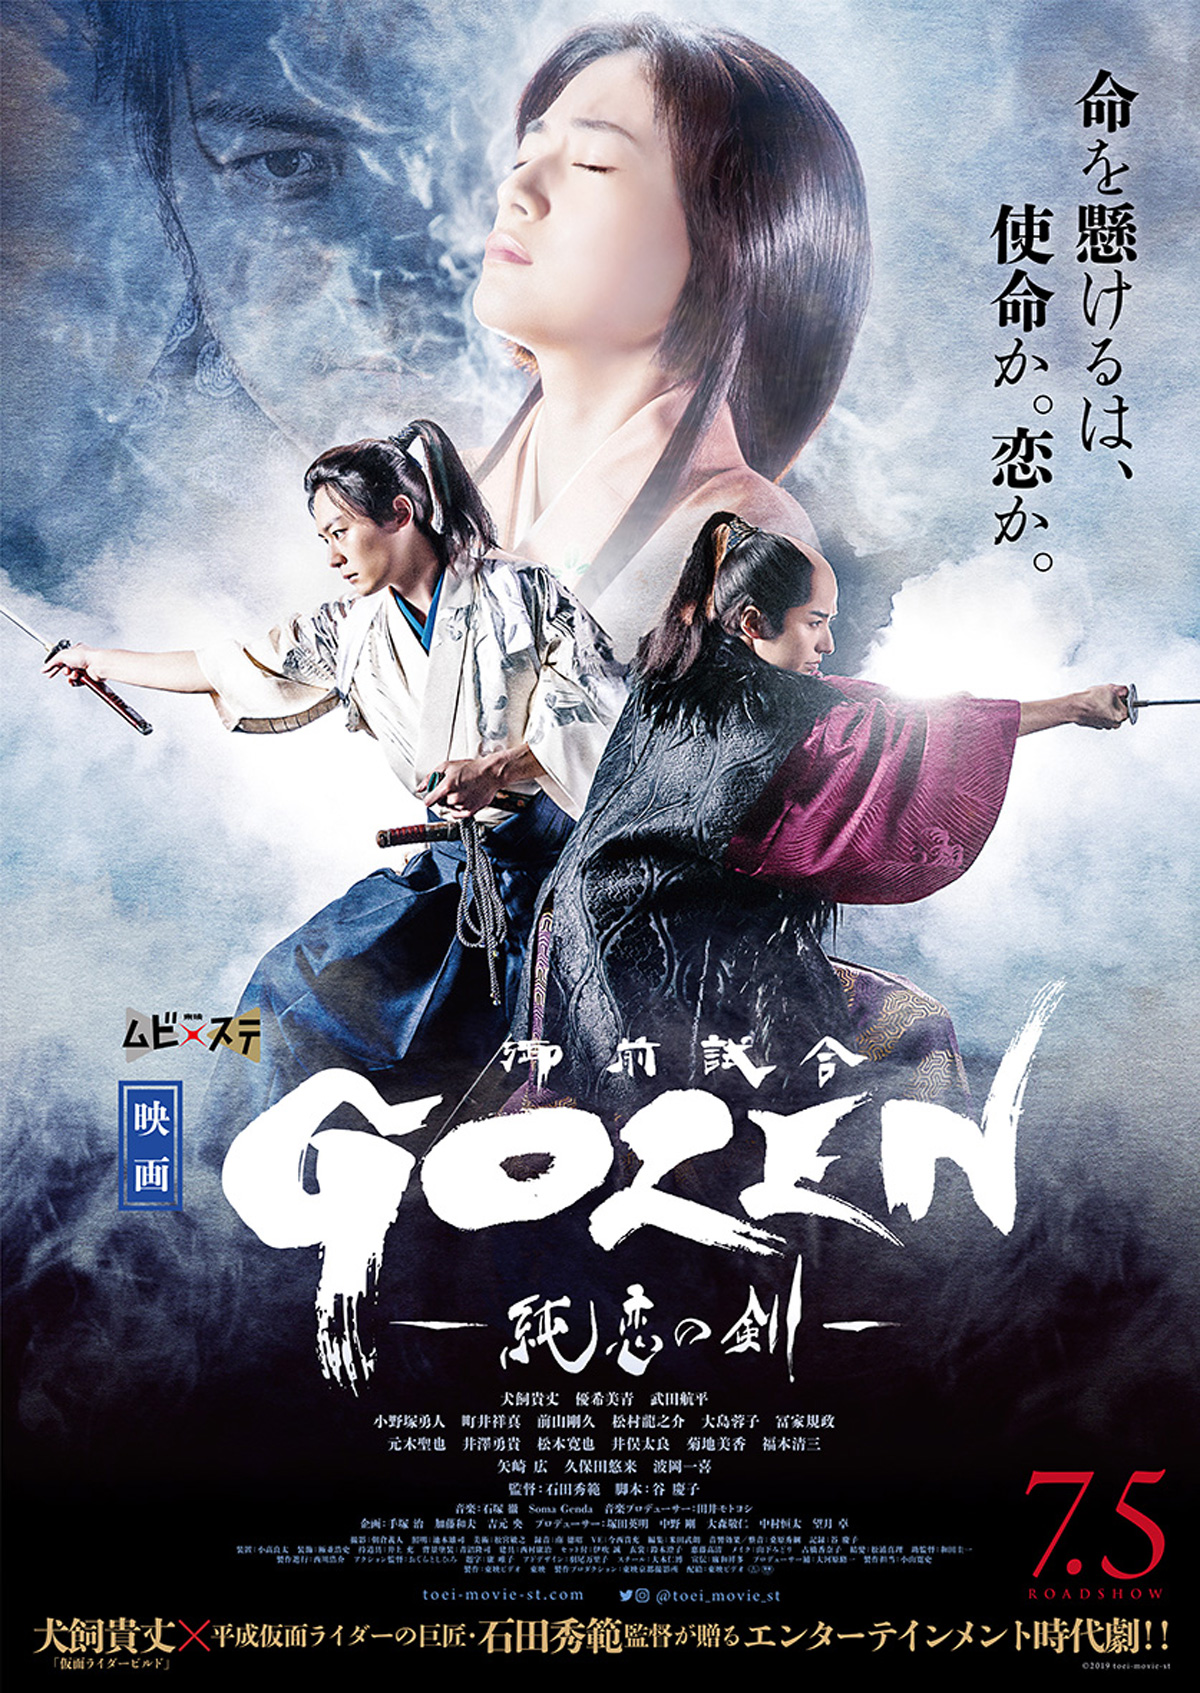 GOZEN-純恋の剣-の画像